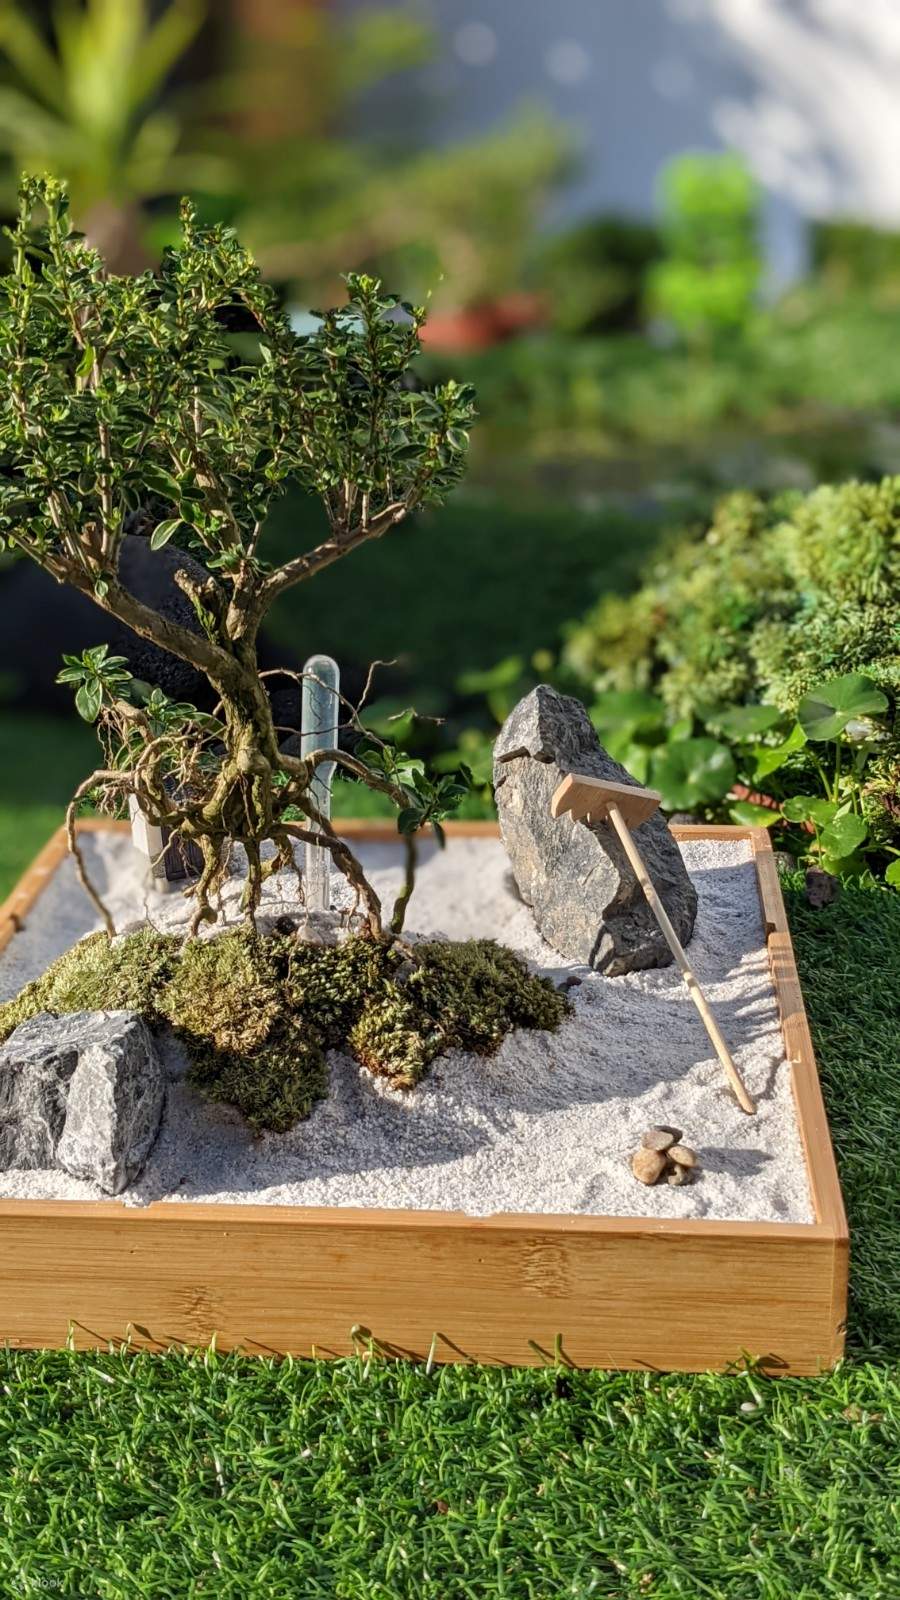 Mini Zen Garden and Mini Treehouse Workshop - Klook Canada